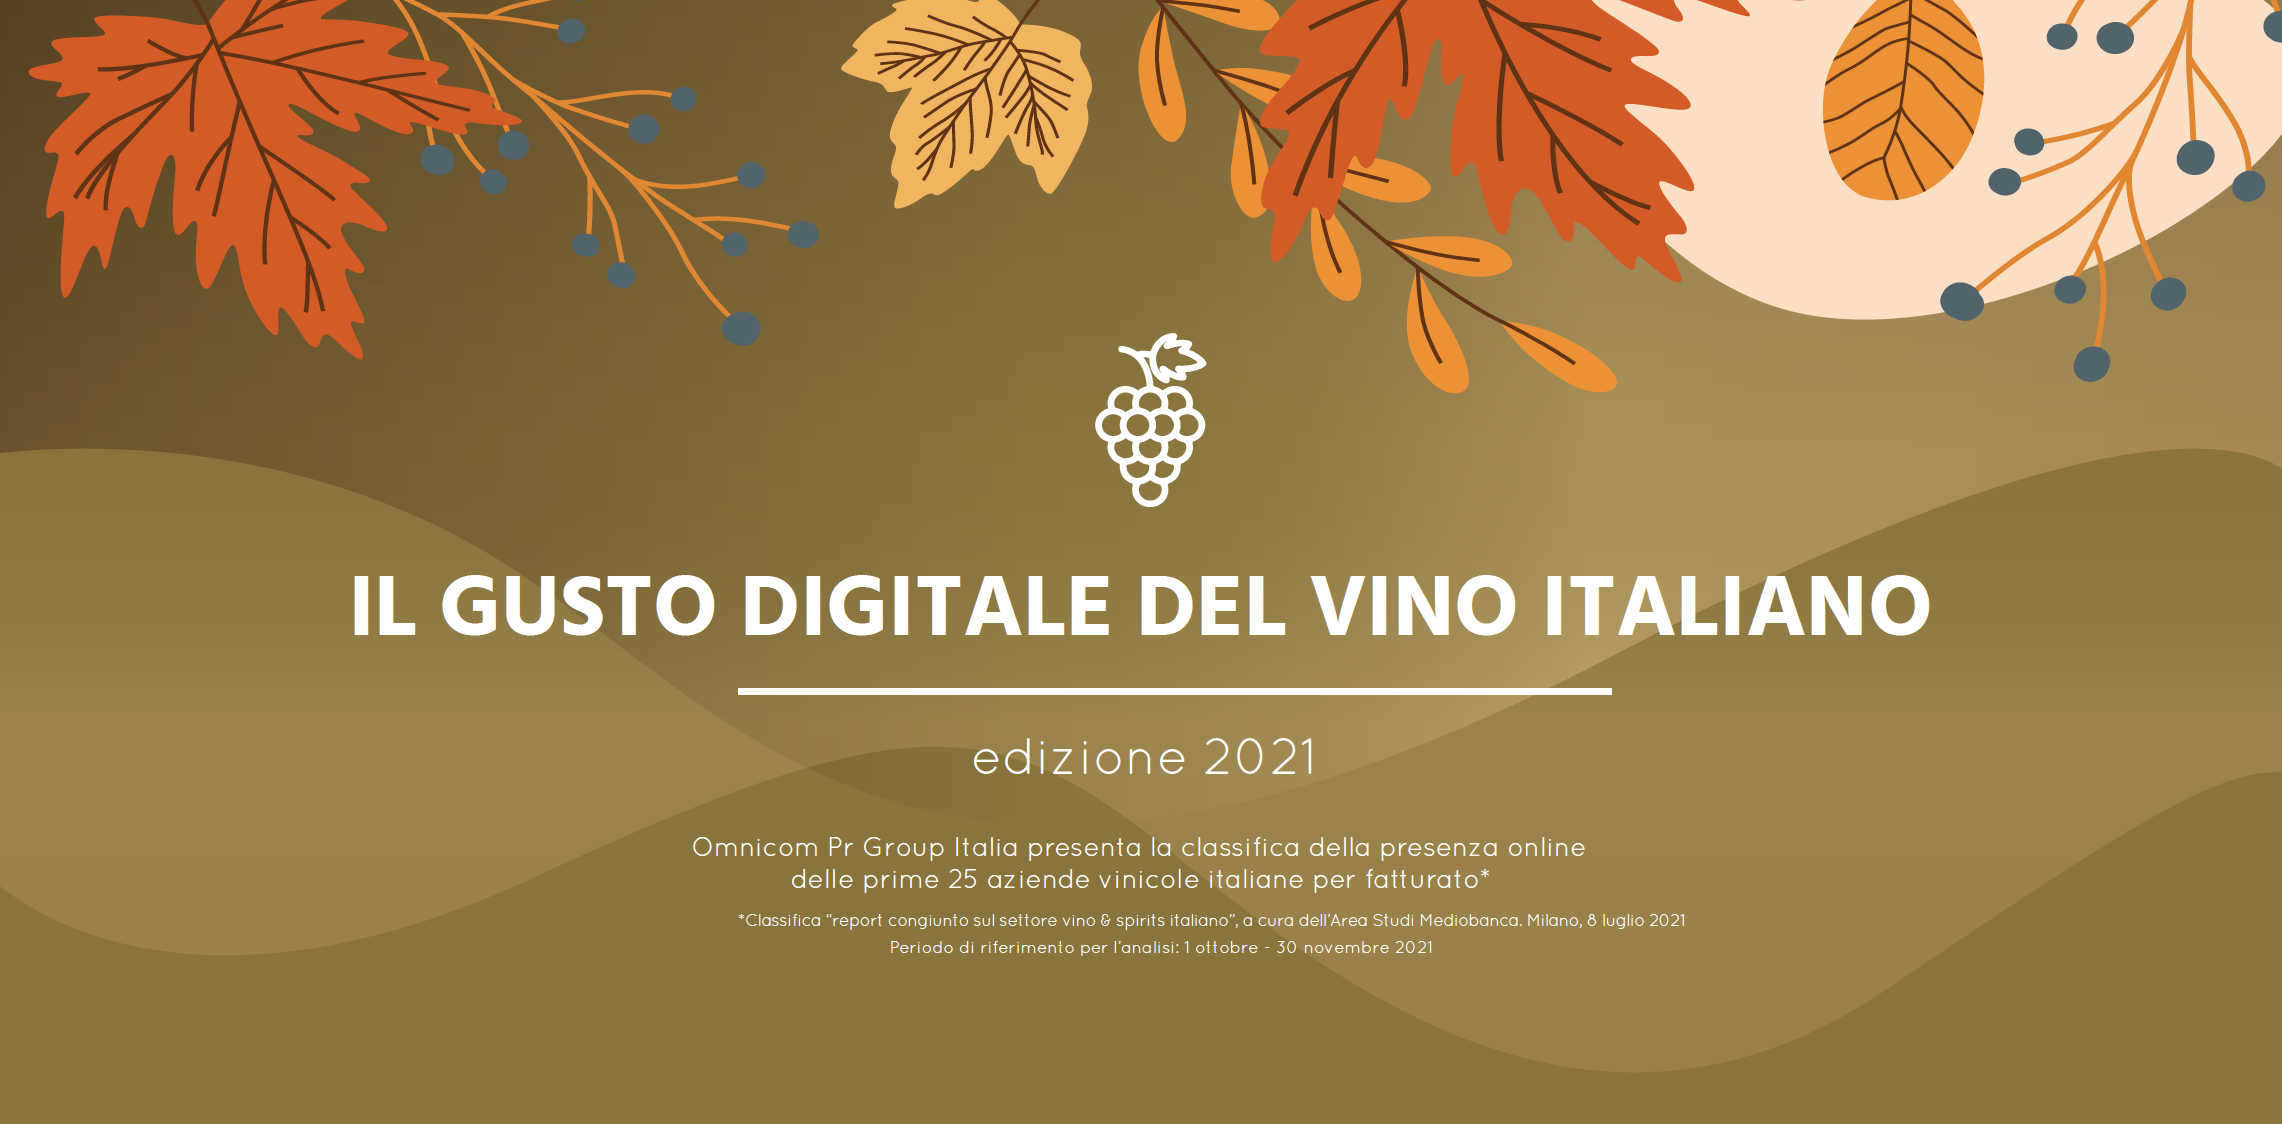 Il gusto digitale del vino italiano 2021